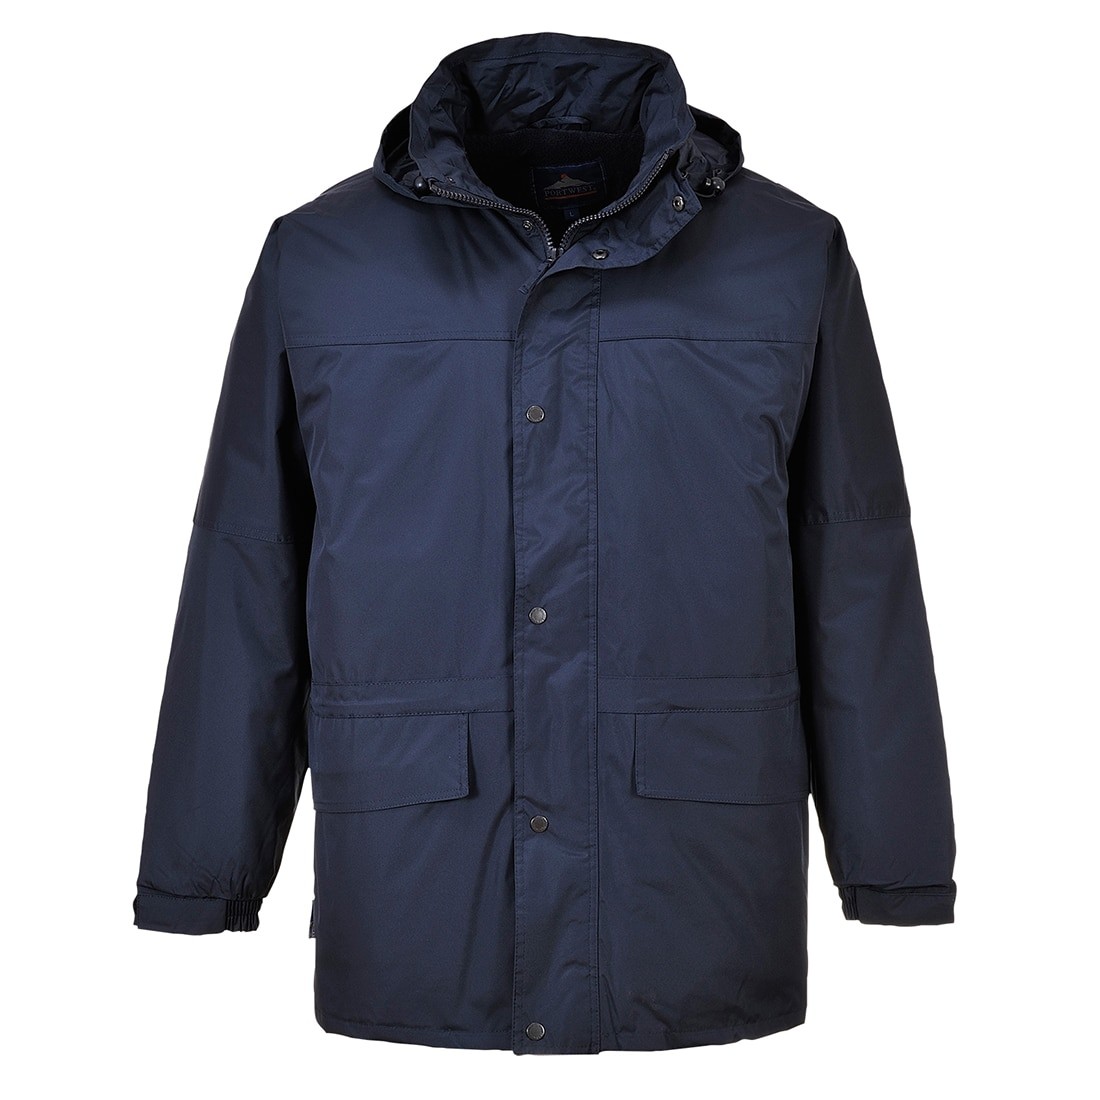 Portwest Oban Fleece Lined Jacket